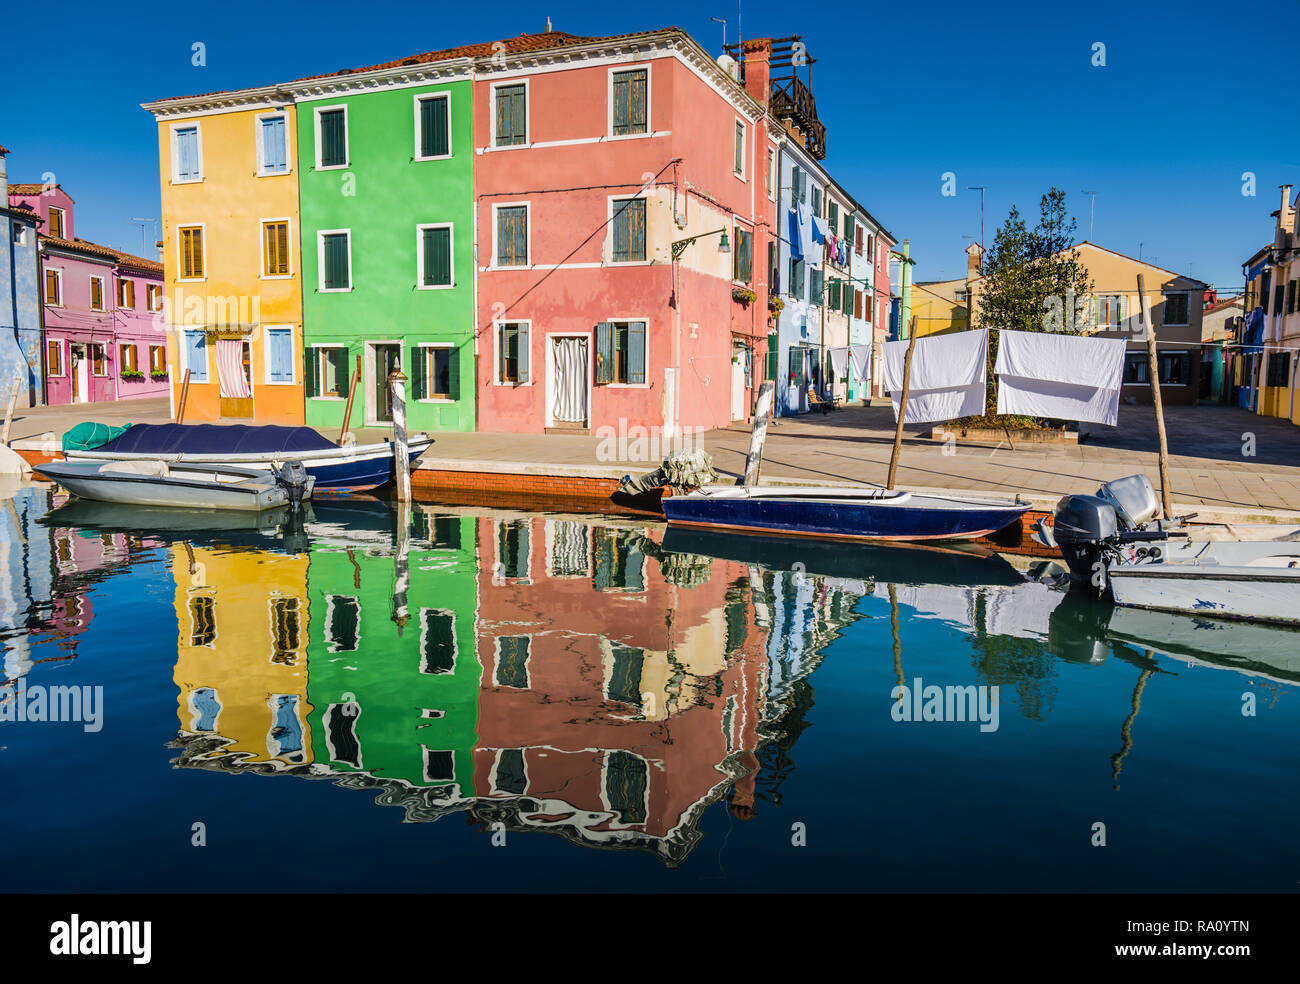 Les bâtiments peints et réflexions, Burano, Venise, Italie. Banque D'Images